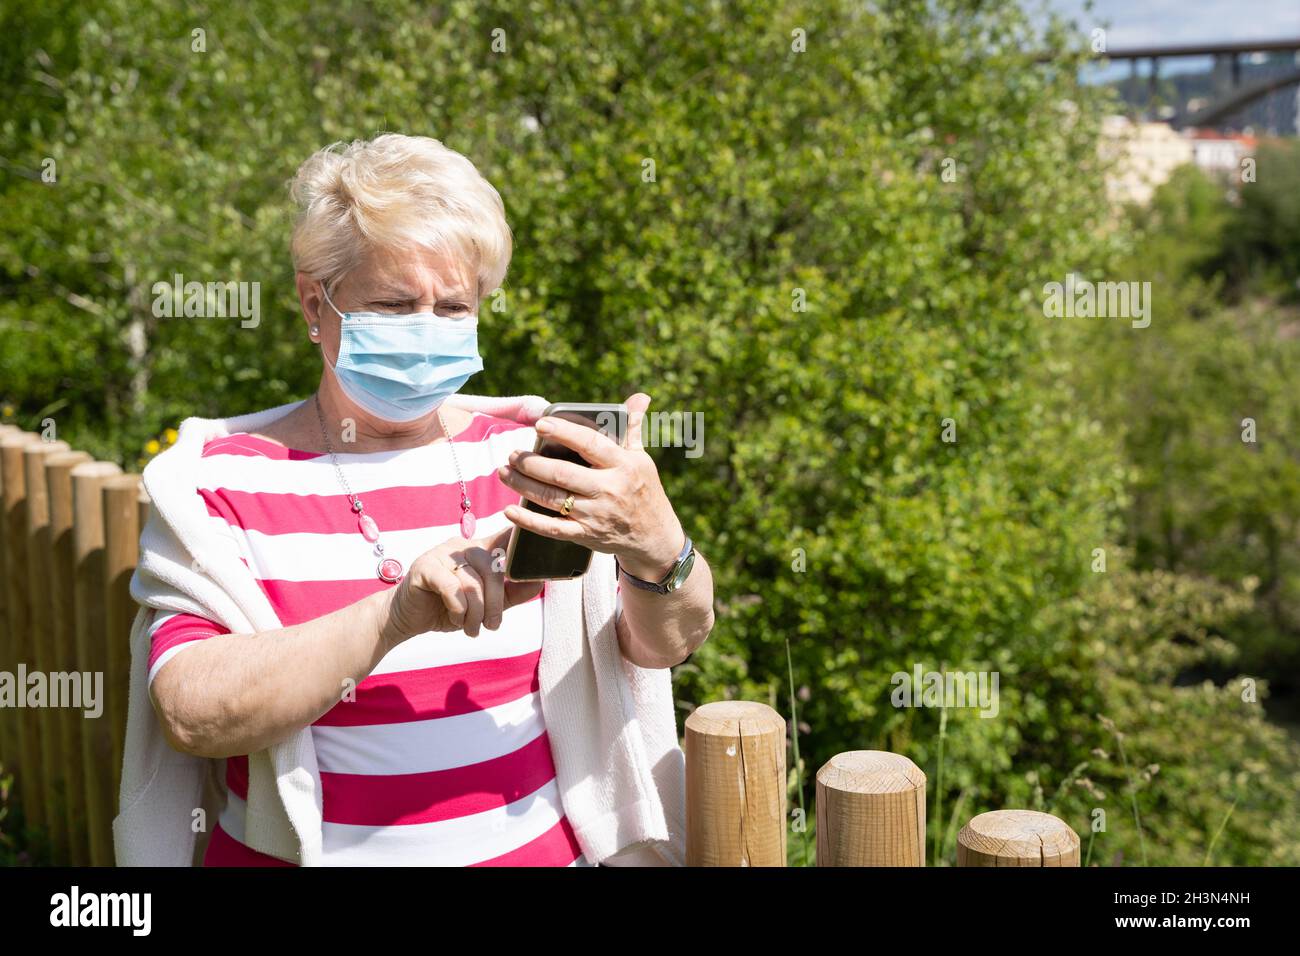 Ältere Frau mit Gesichtsmaske, die am sonnigen Tag den Handybildschirm im Park berührt. Ältere Dame, die mit dem Mobiltelefon auf der natürlichen Landschaft steht Stockfoto